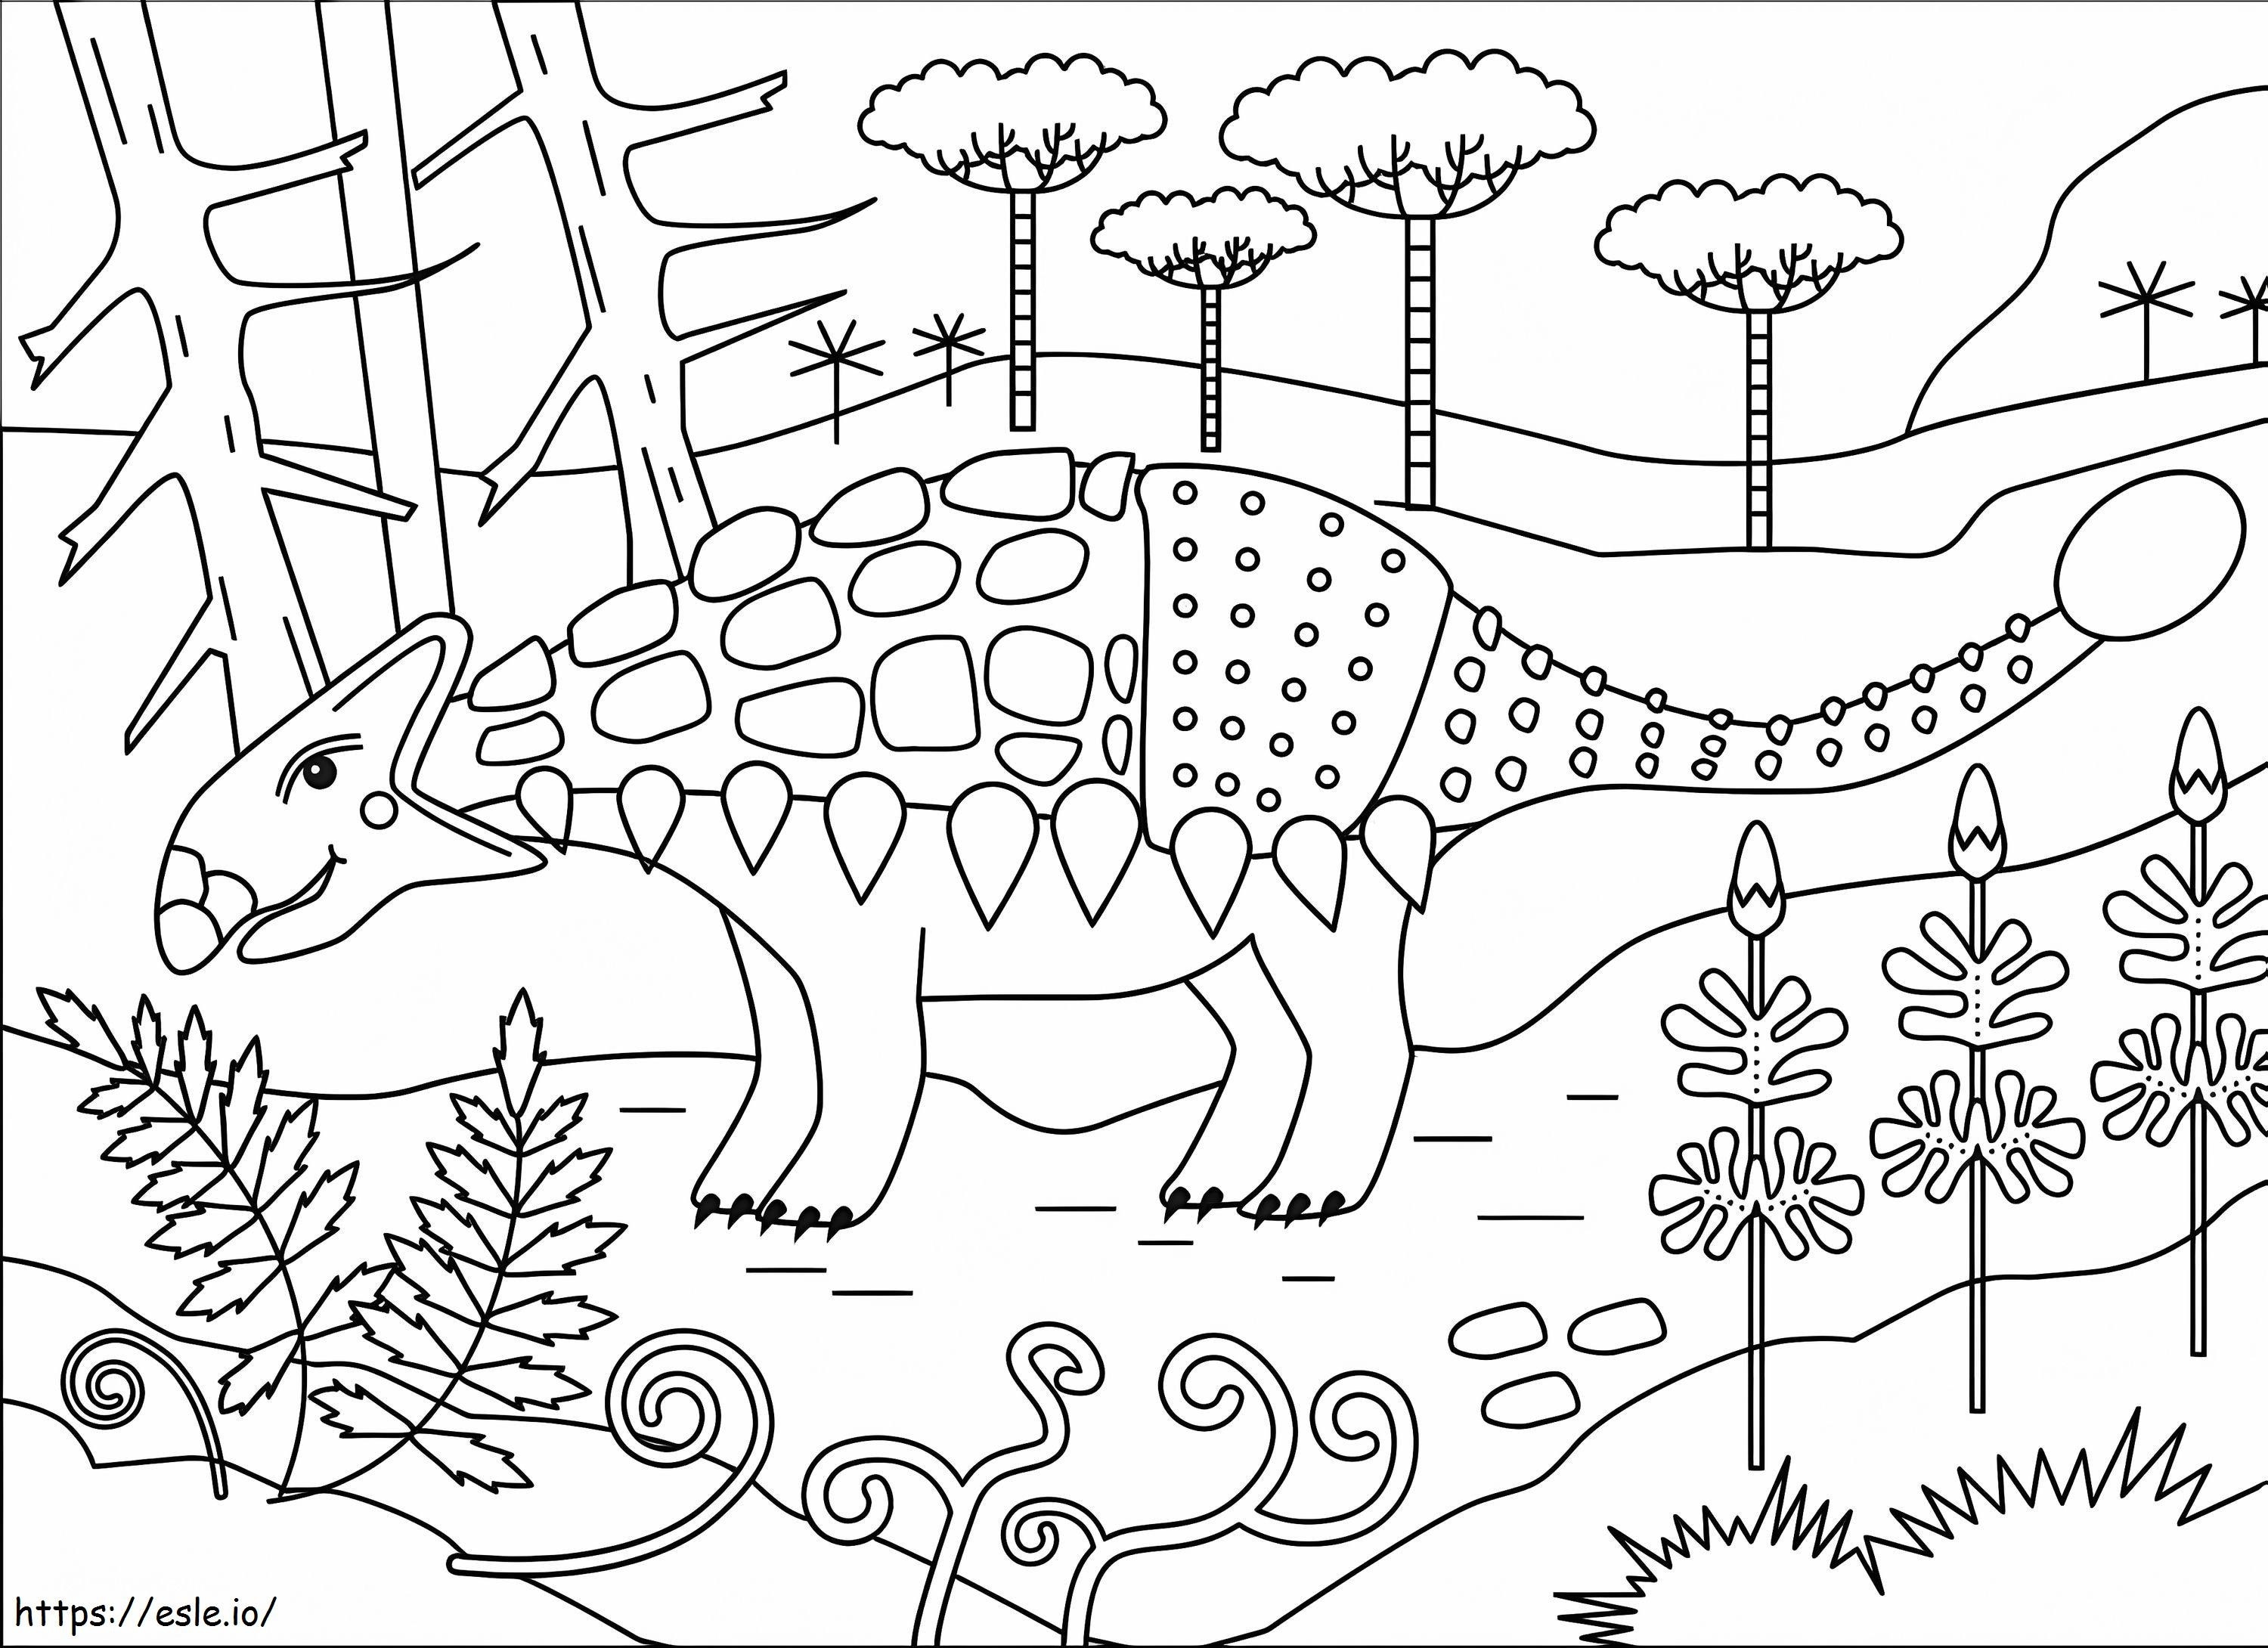 Anquilossauro fácil para colorir